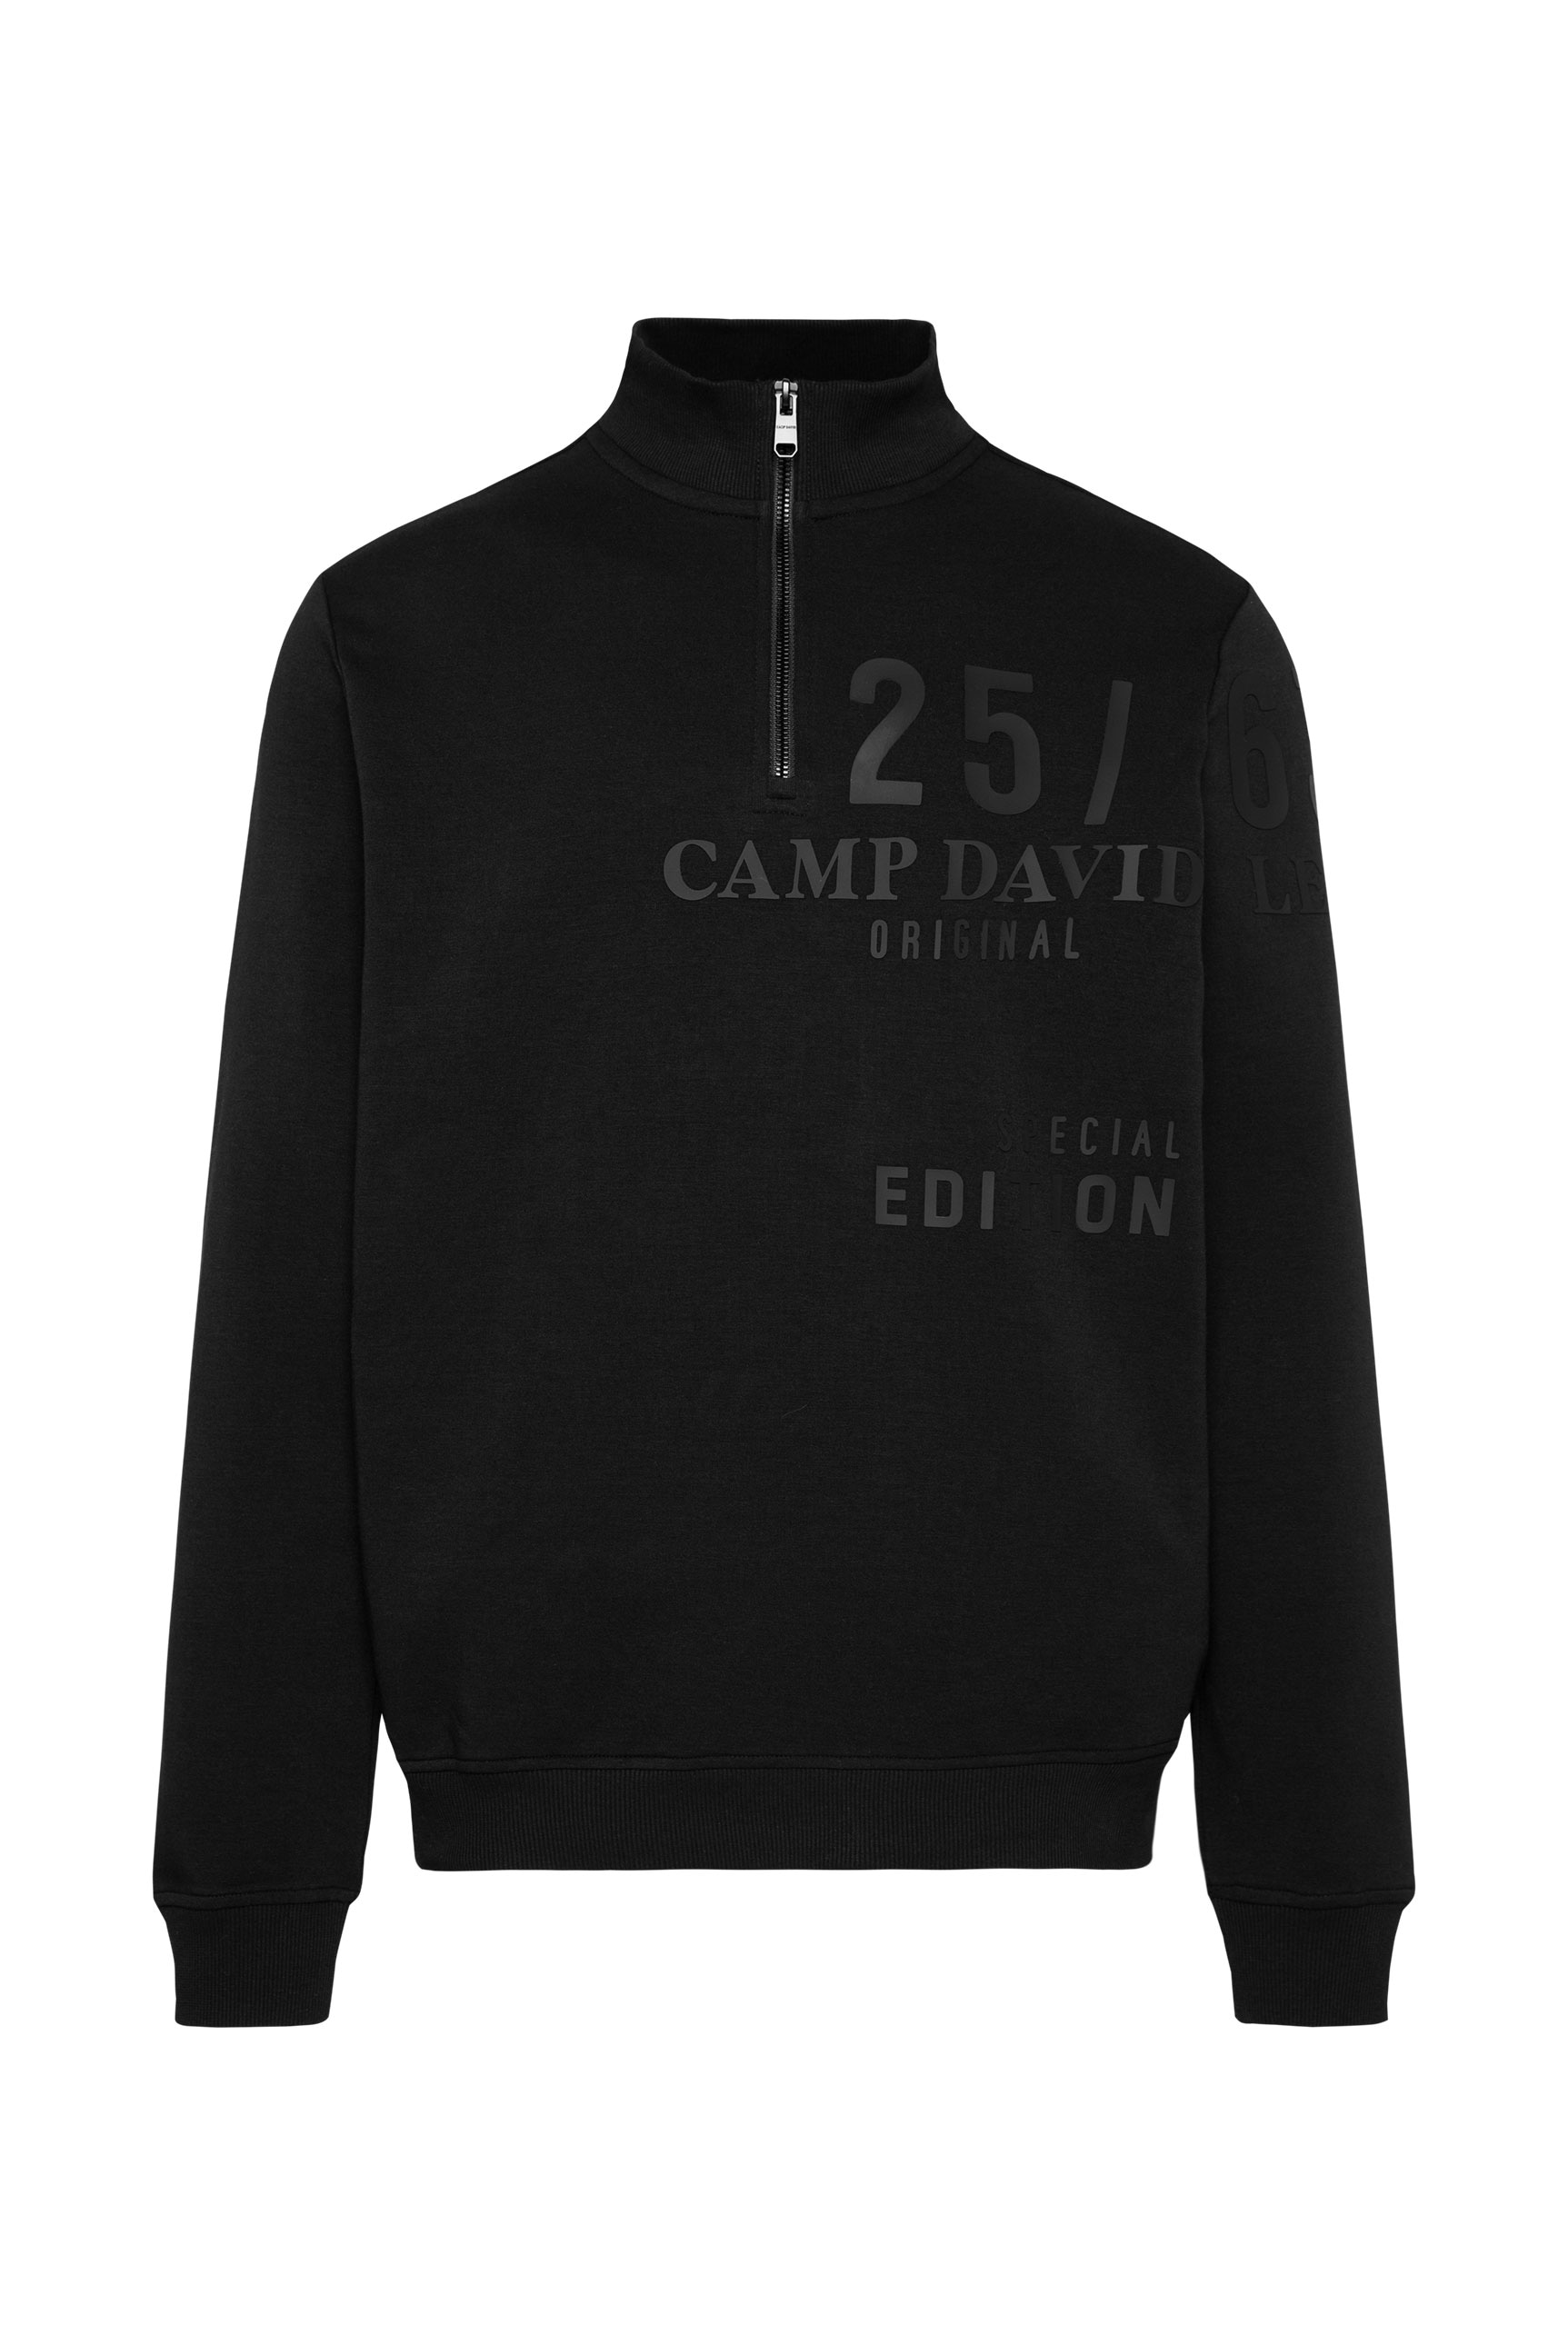 CAMP DAVID Sweatshirt, mit Marken-Schriftzug auf der Brust